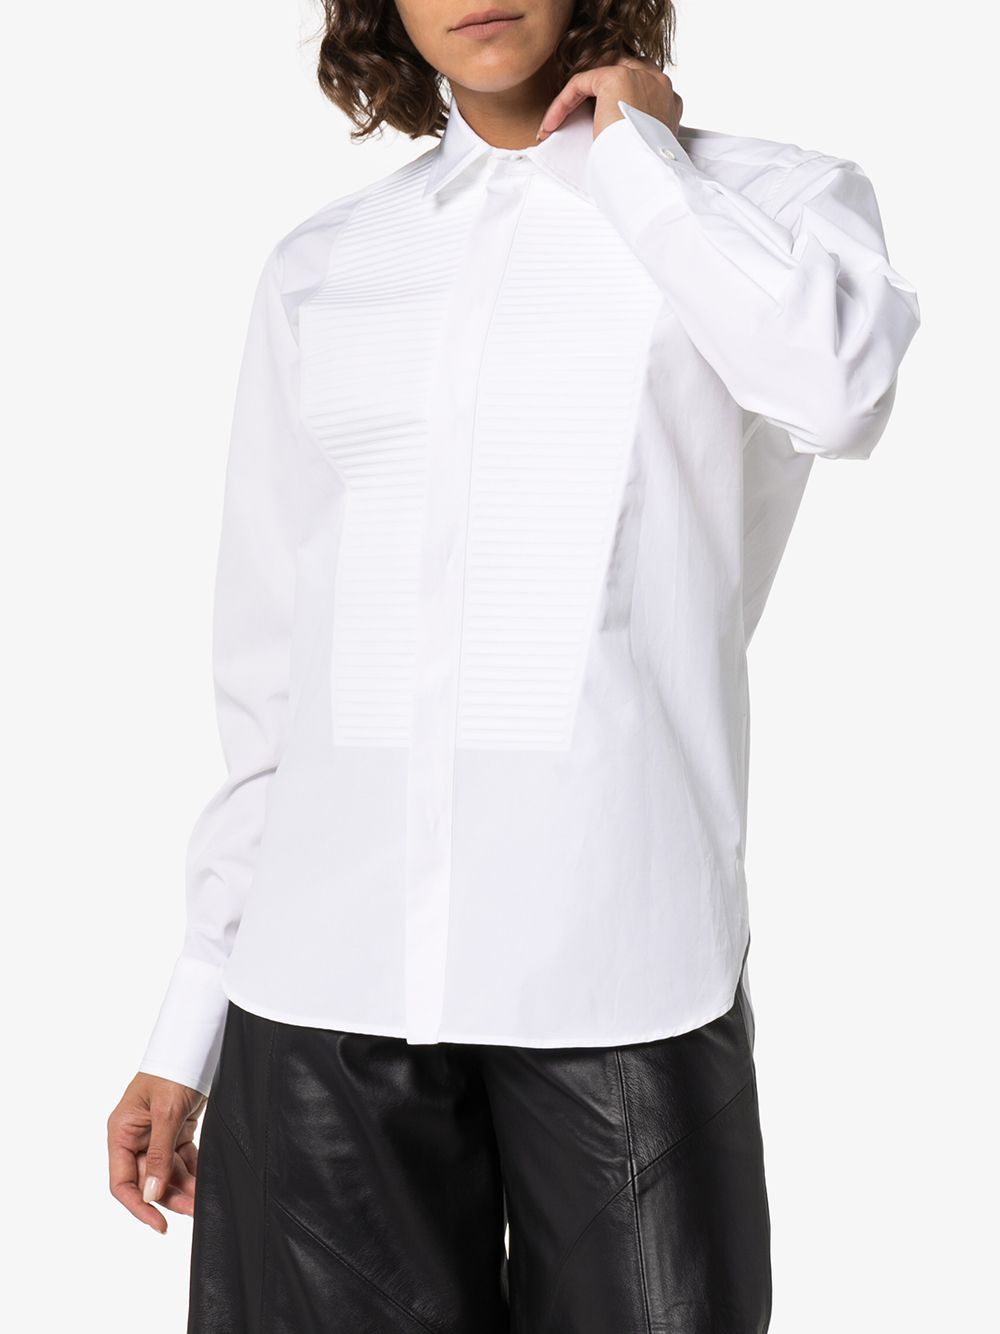 фото Bottega veneta рубашка с плиссированным нагрудником